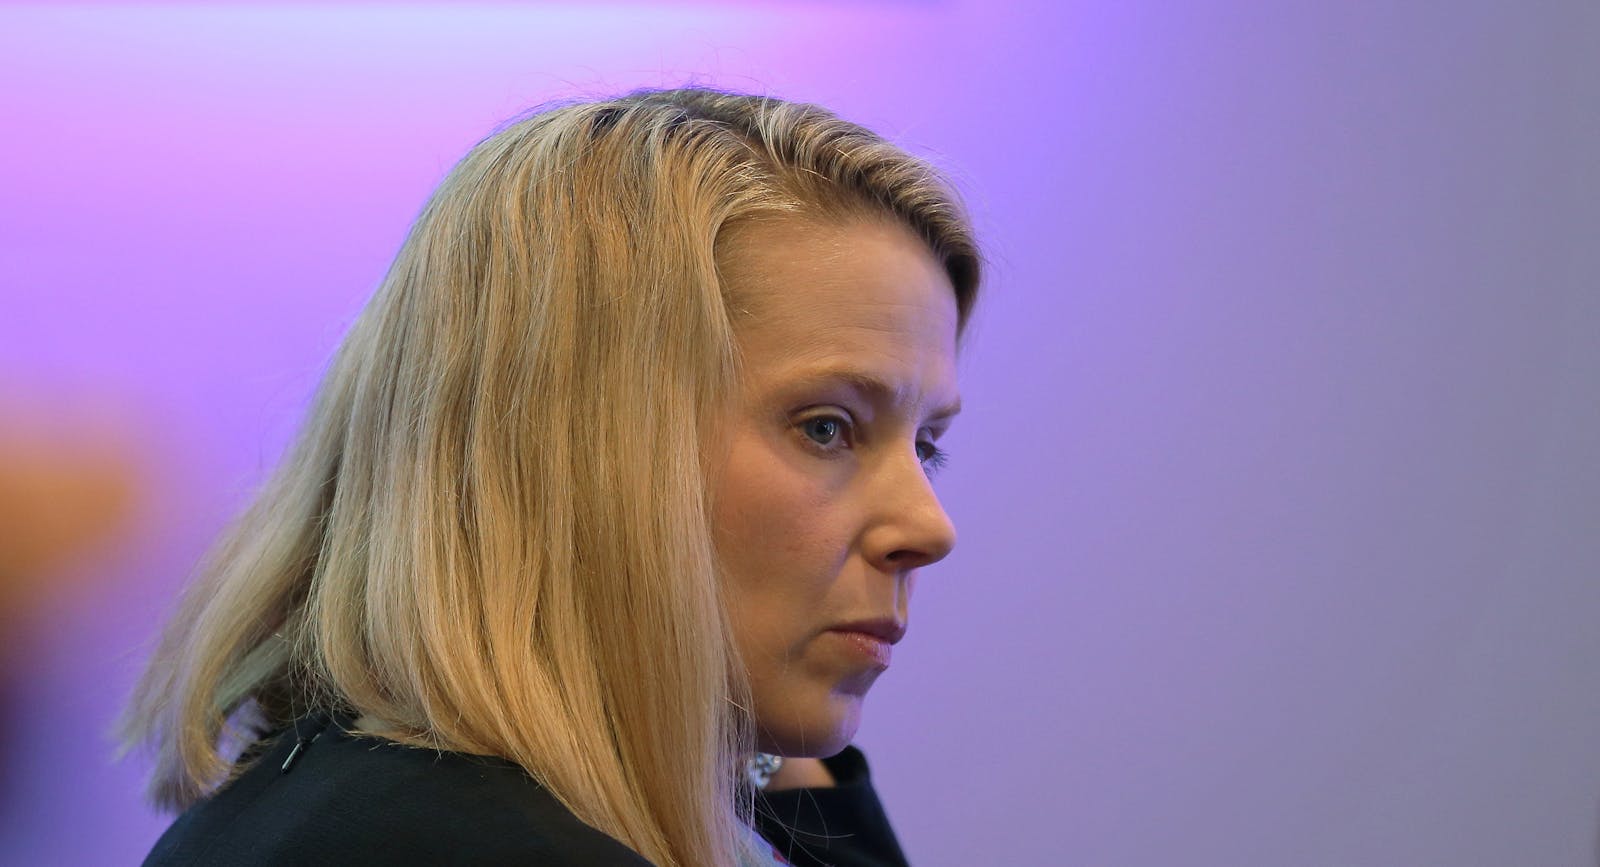 Yahoo CEO Marissa Mayer. Photo by Bloomberg.